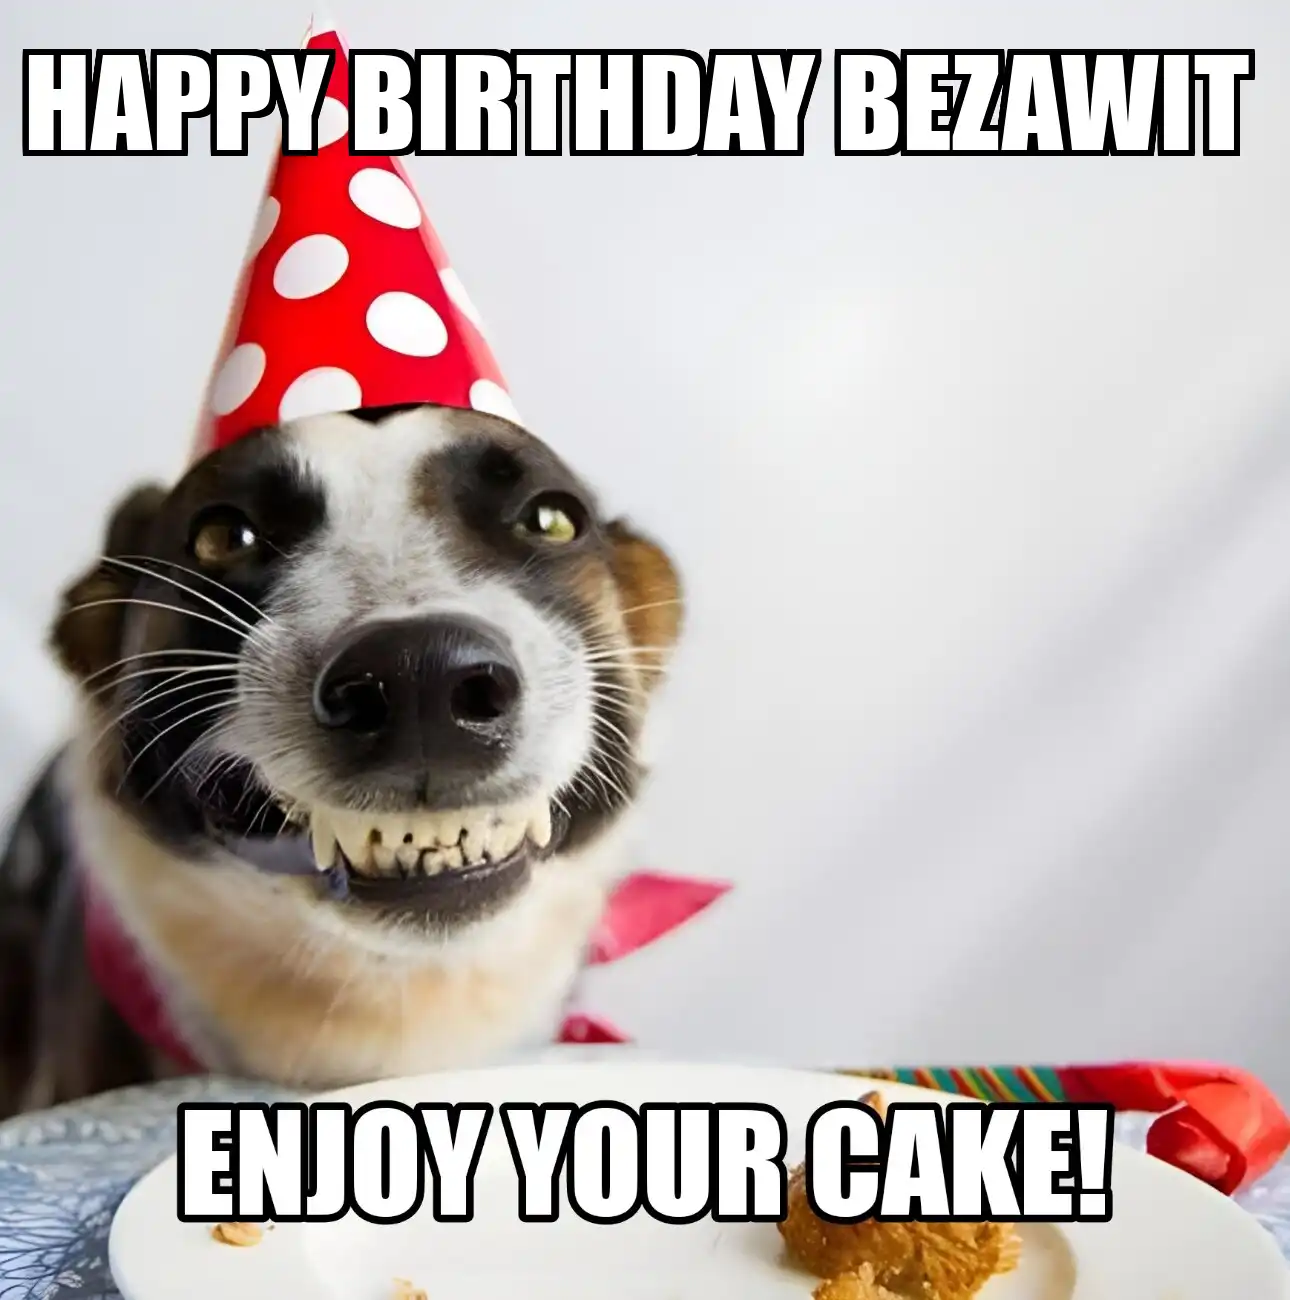 Happy Birthday Bezawit Enjoy Your Cake Dog Meme